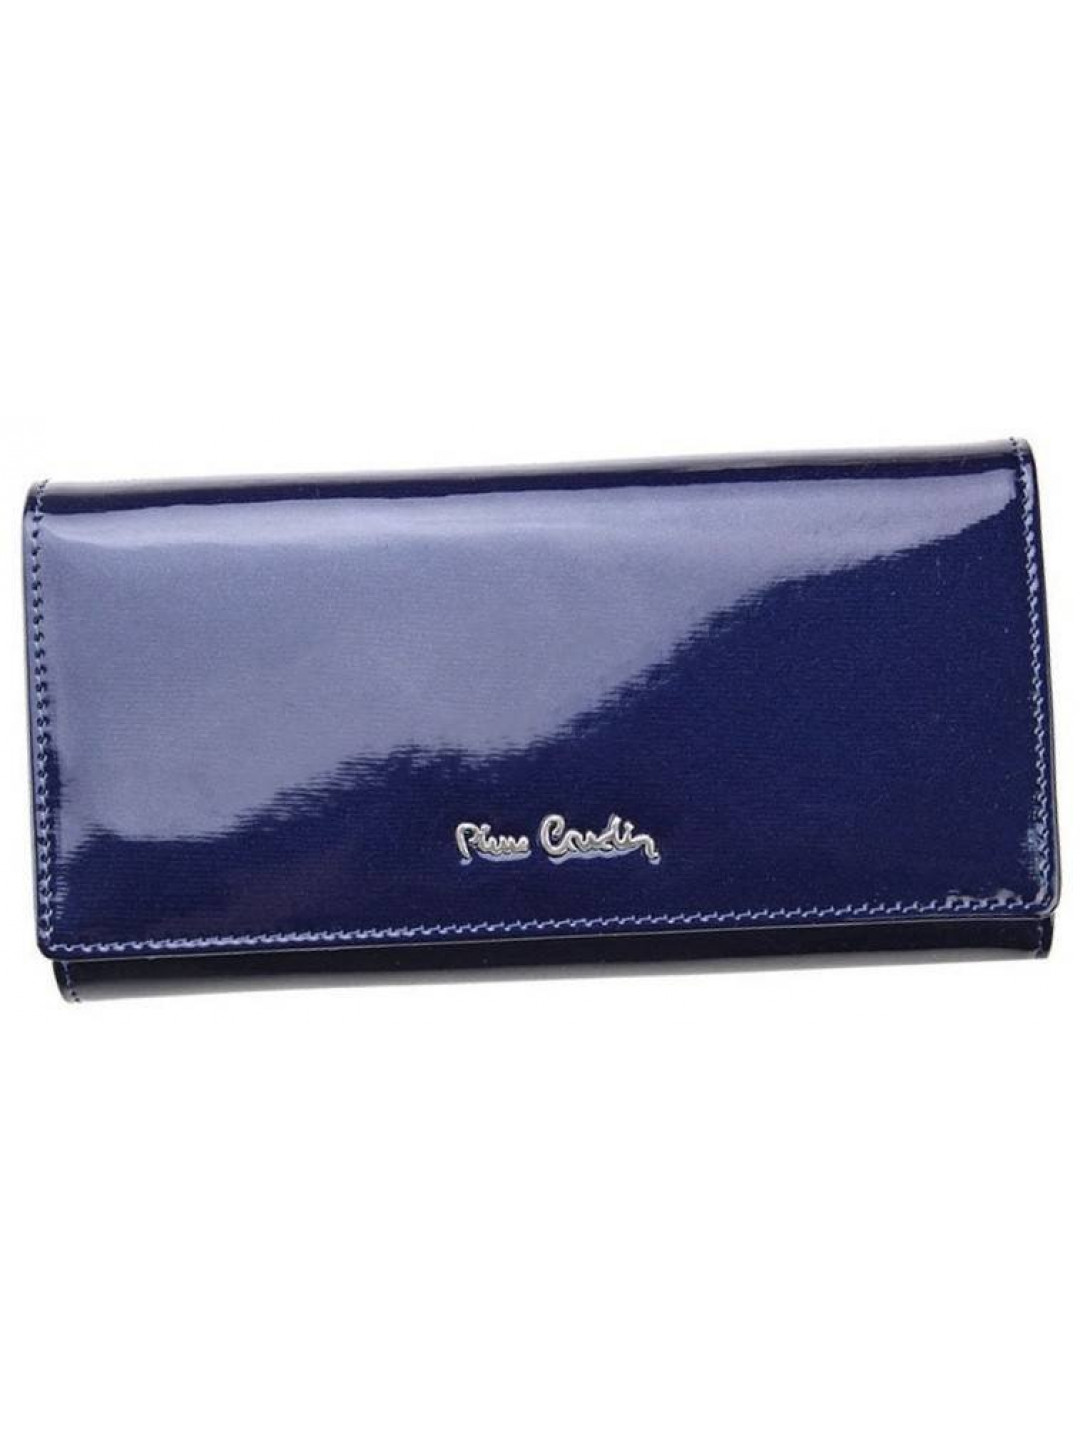 Luxusní dámská kožená lakovaná peněženka Pierre Cardin Thalia modrá